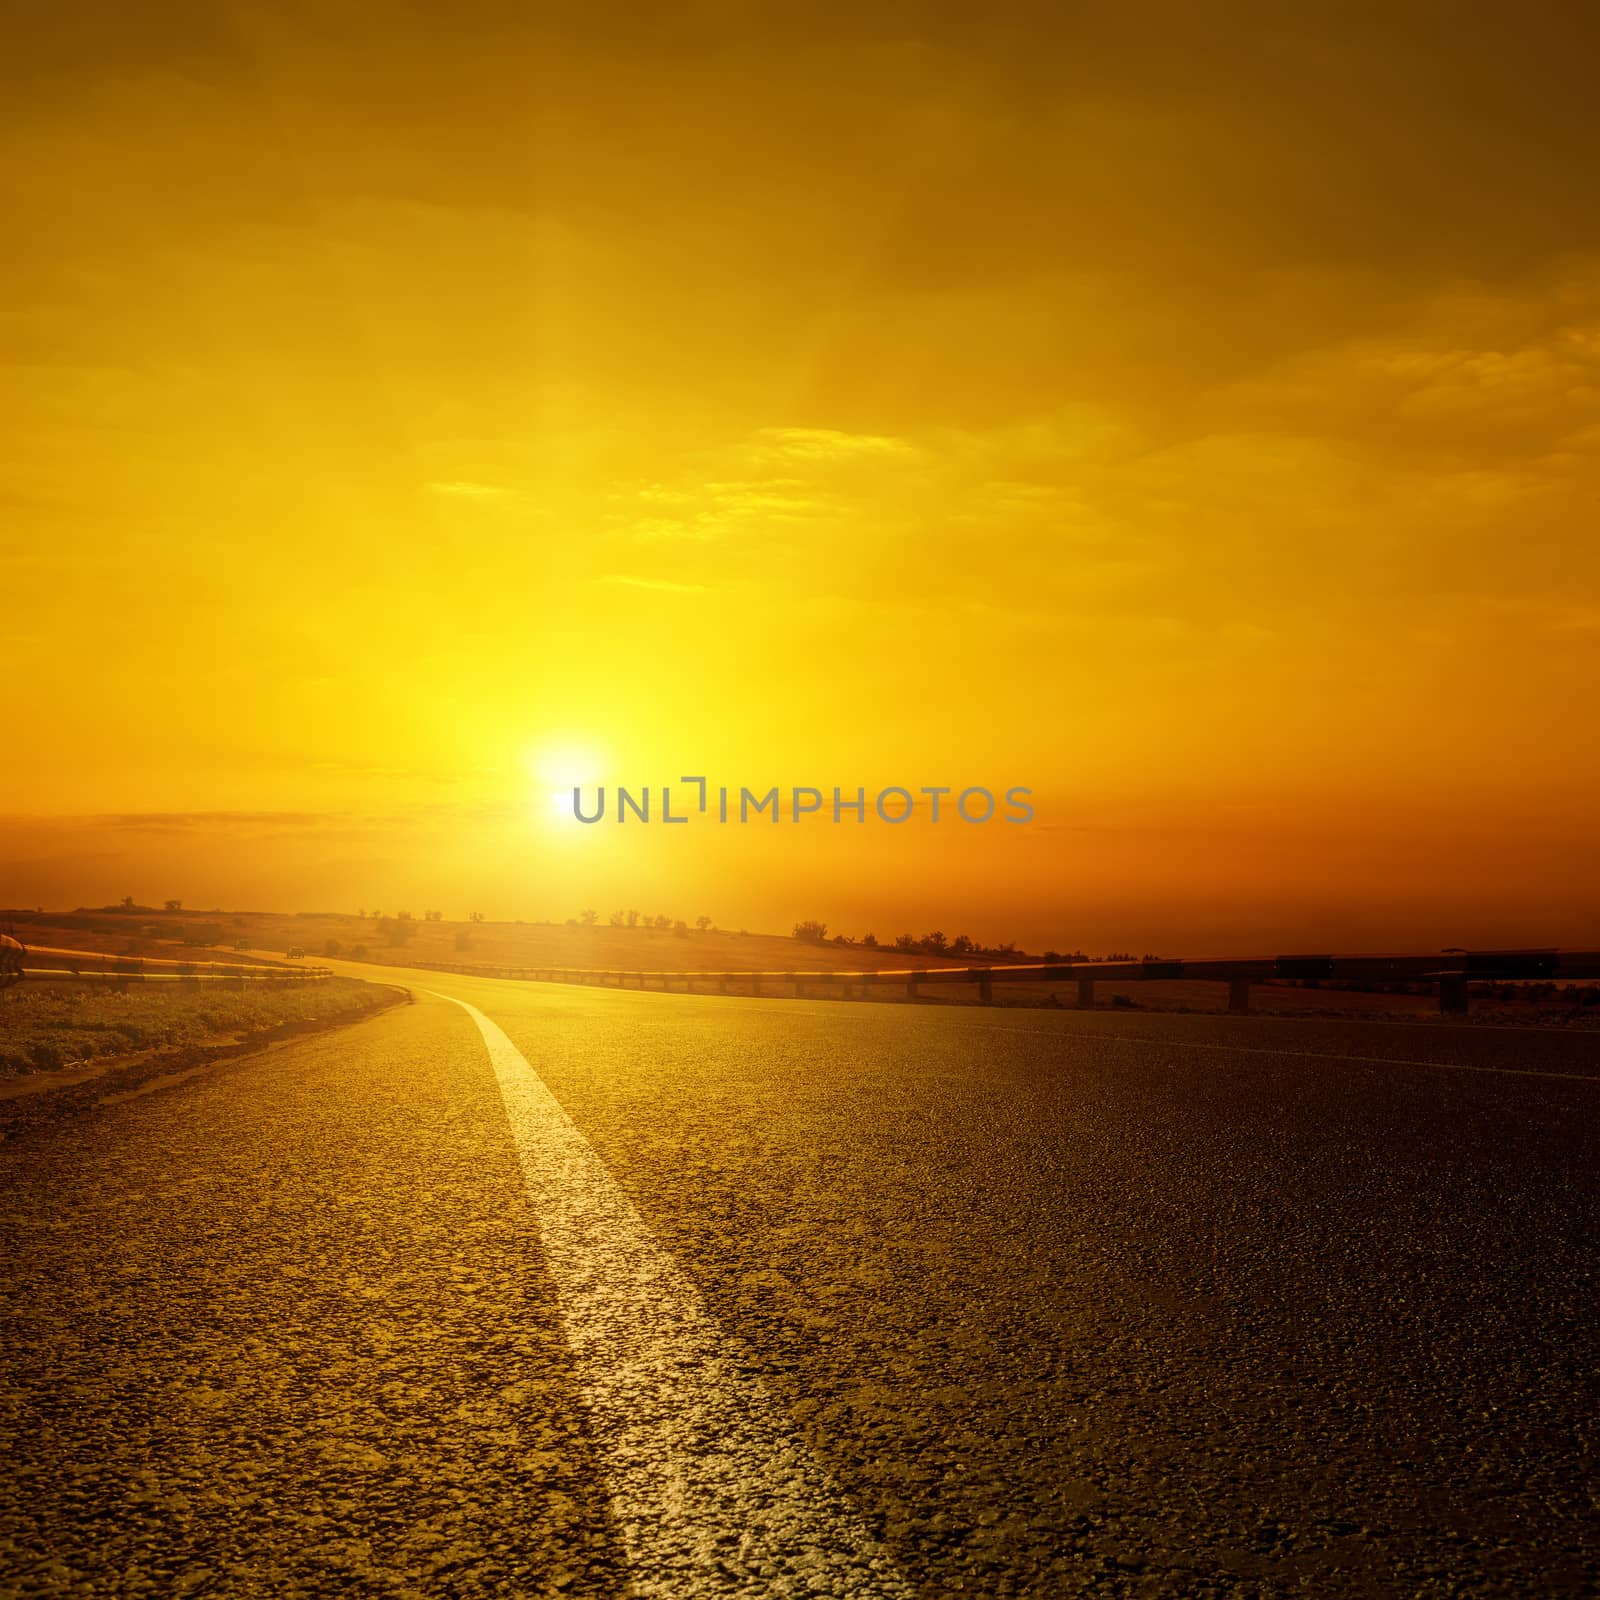 golden sunset over asphalt road by mycola